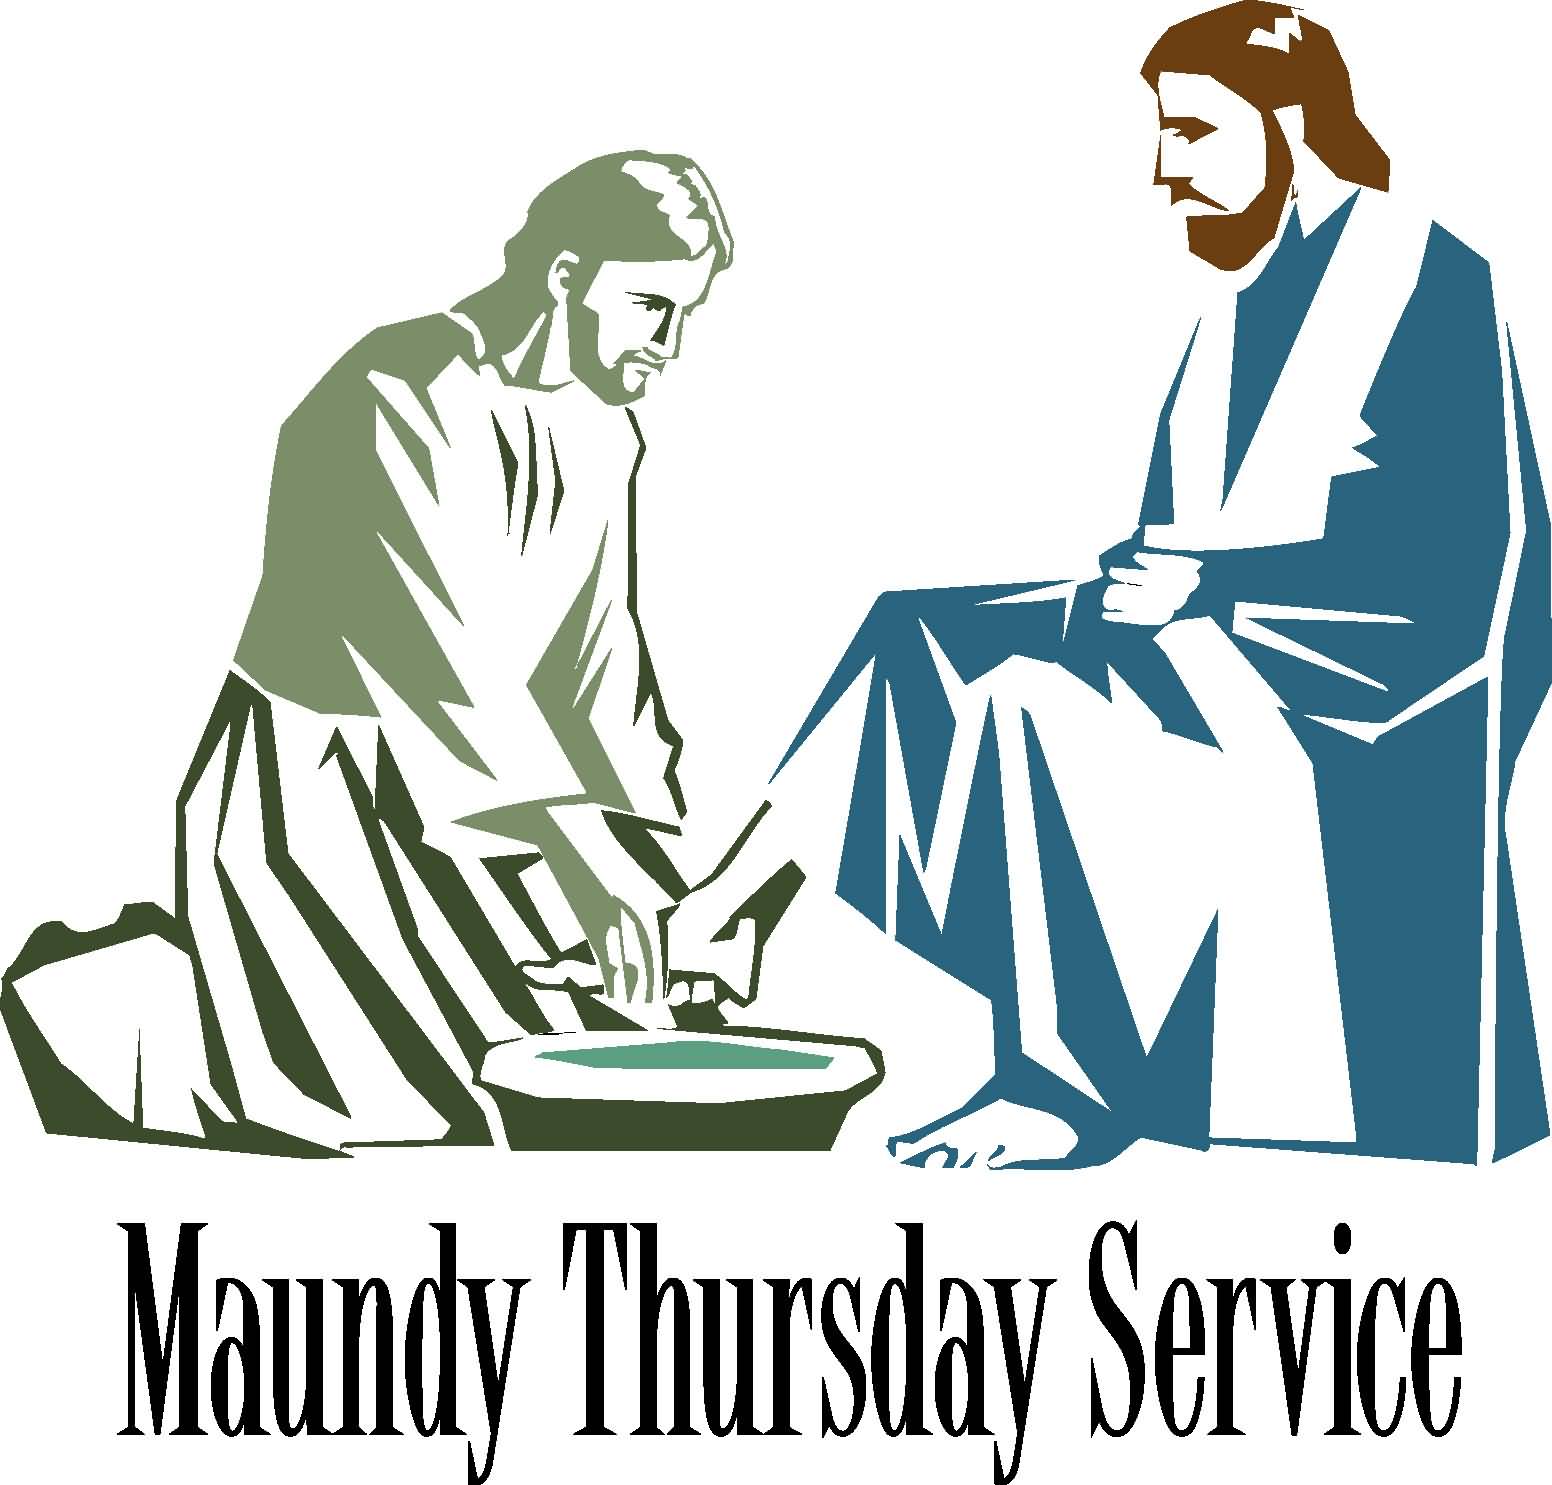 Maundy Thursday Service Illustration